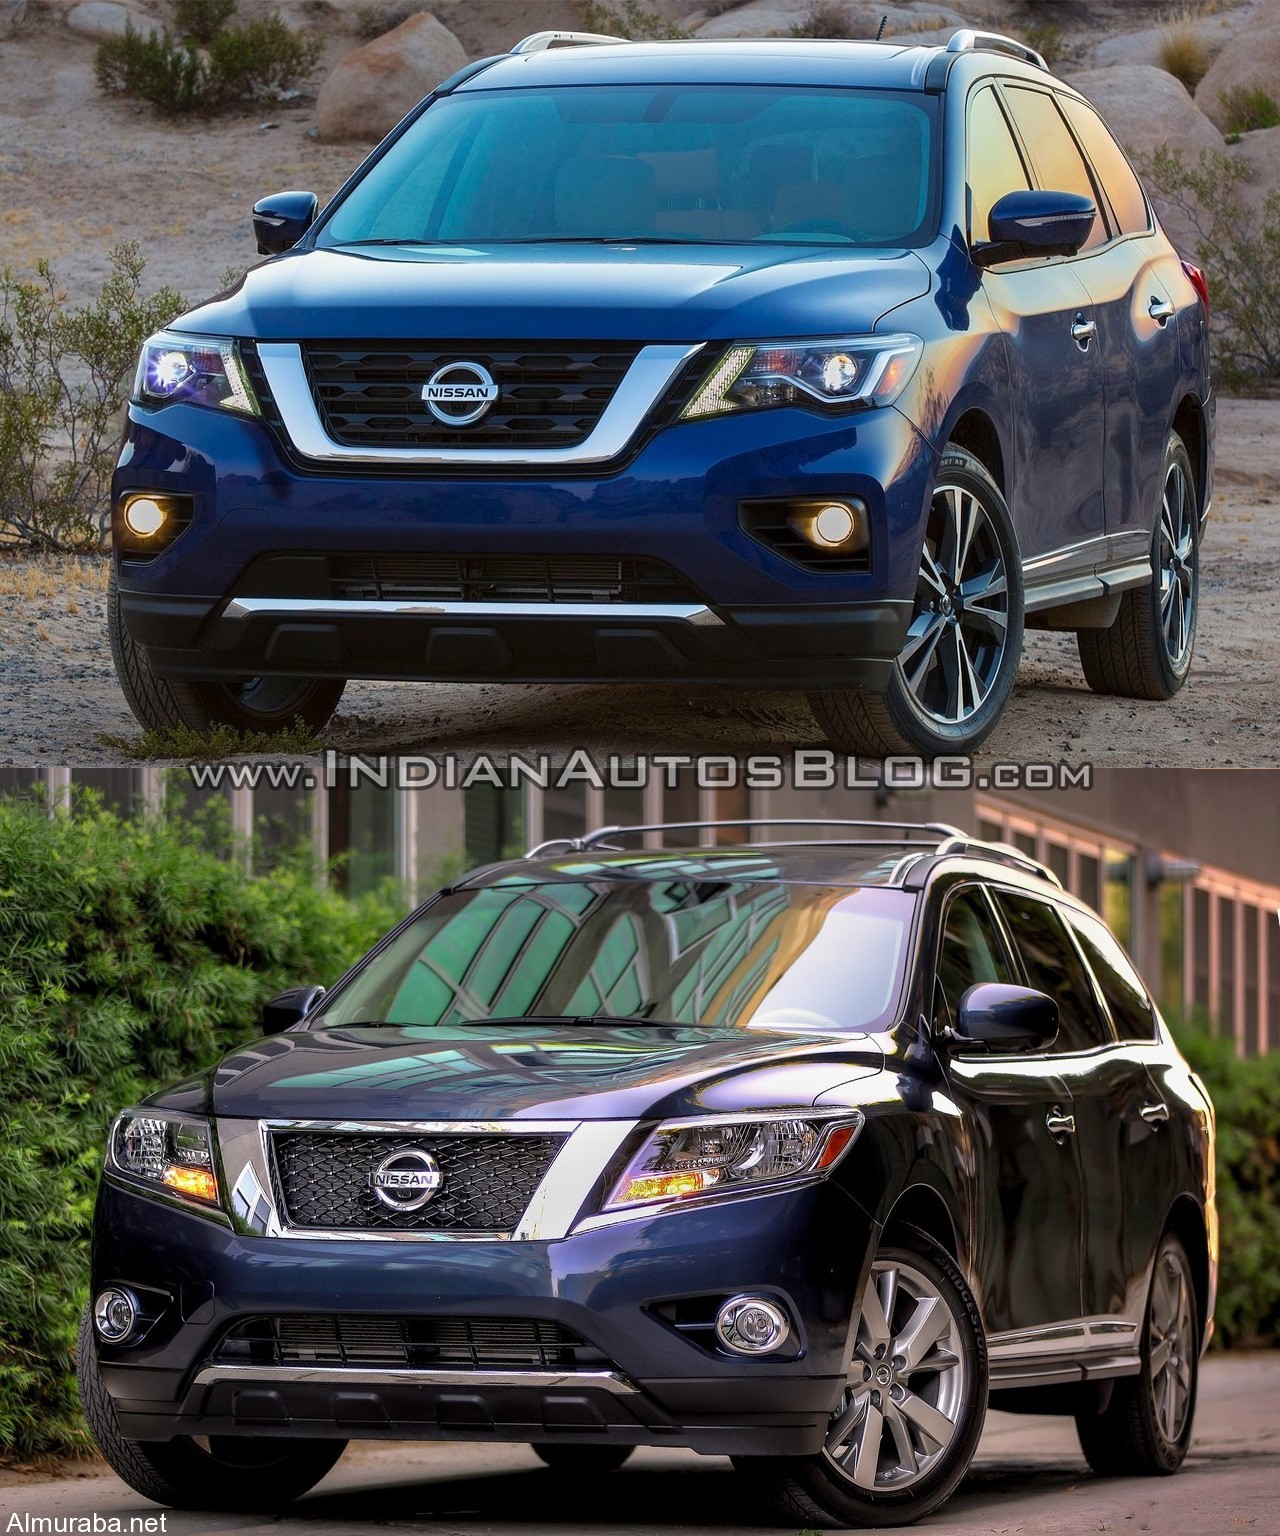 “مقارنة بالصور” بين موديلي “نيسان” باثفايندر 2017 و 2016 Nissan Pathfinder